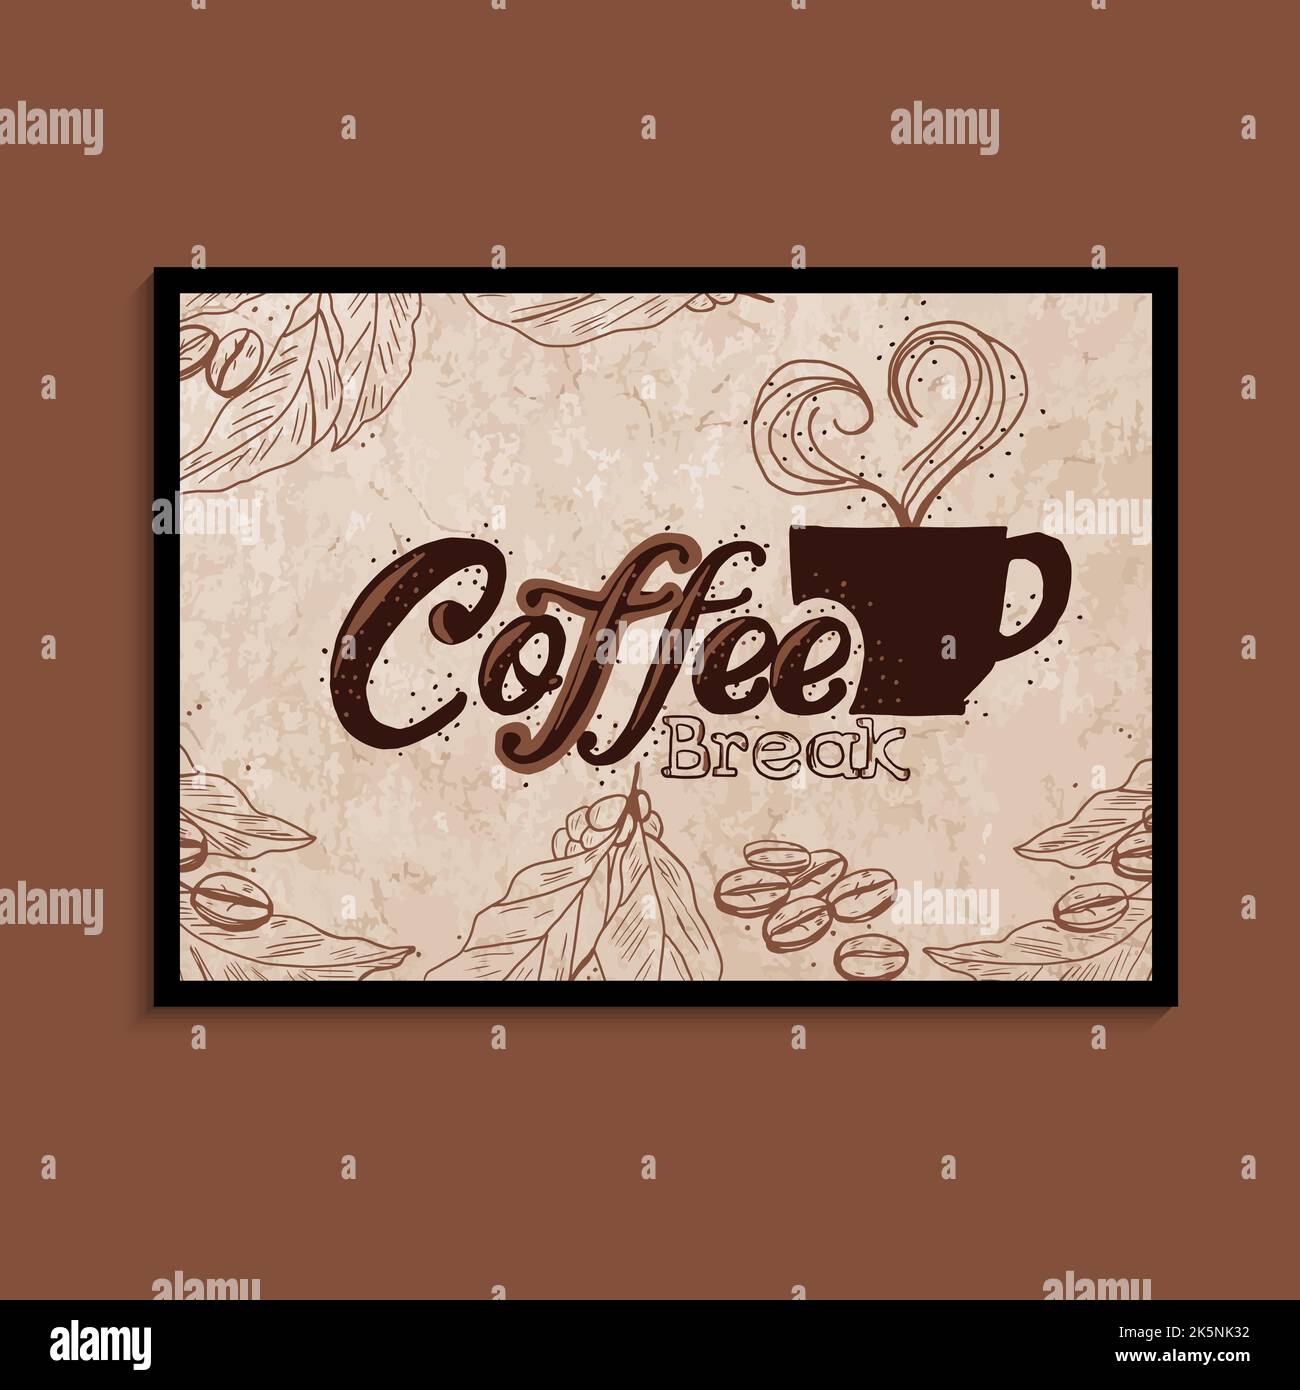 Una tazza di caffè e una pausa caffè. Poster con caffè per caffè, ristorante e caffetteria. Design grafico concettuale. Vettore Illustrazione Vettoriale